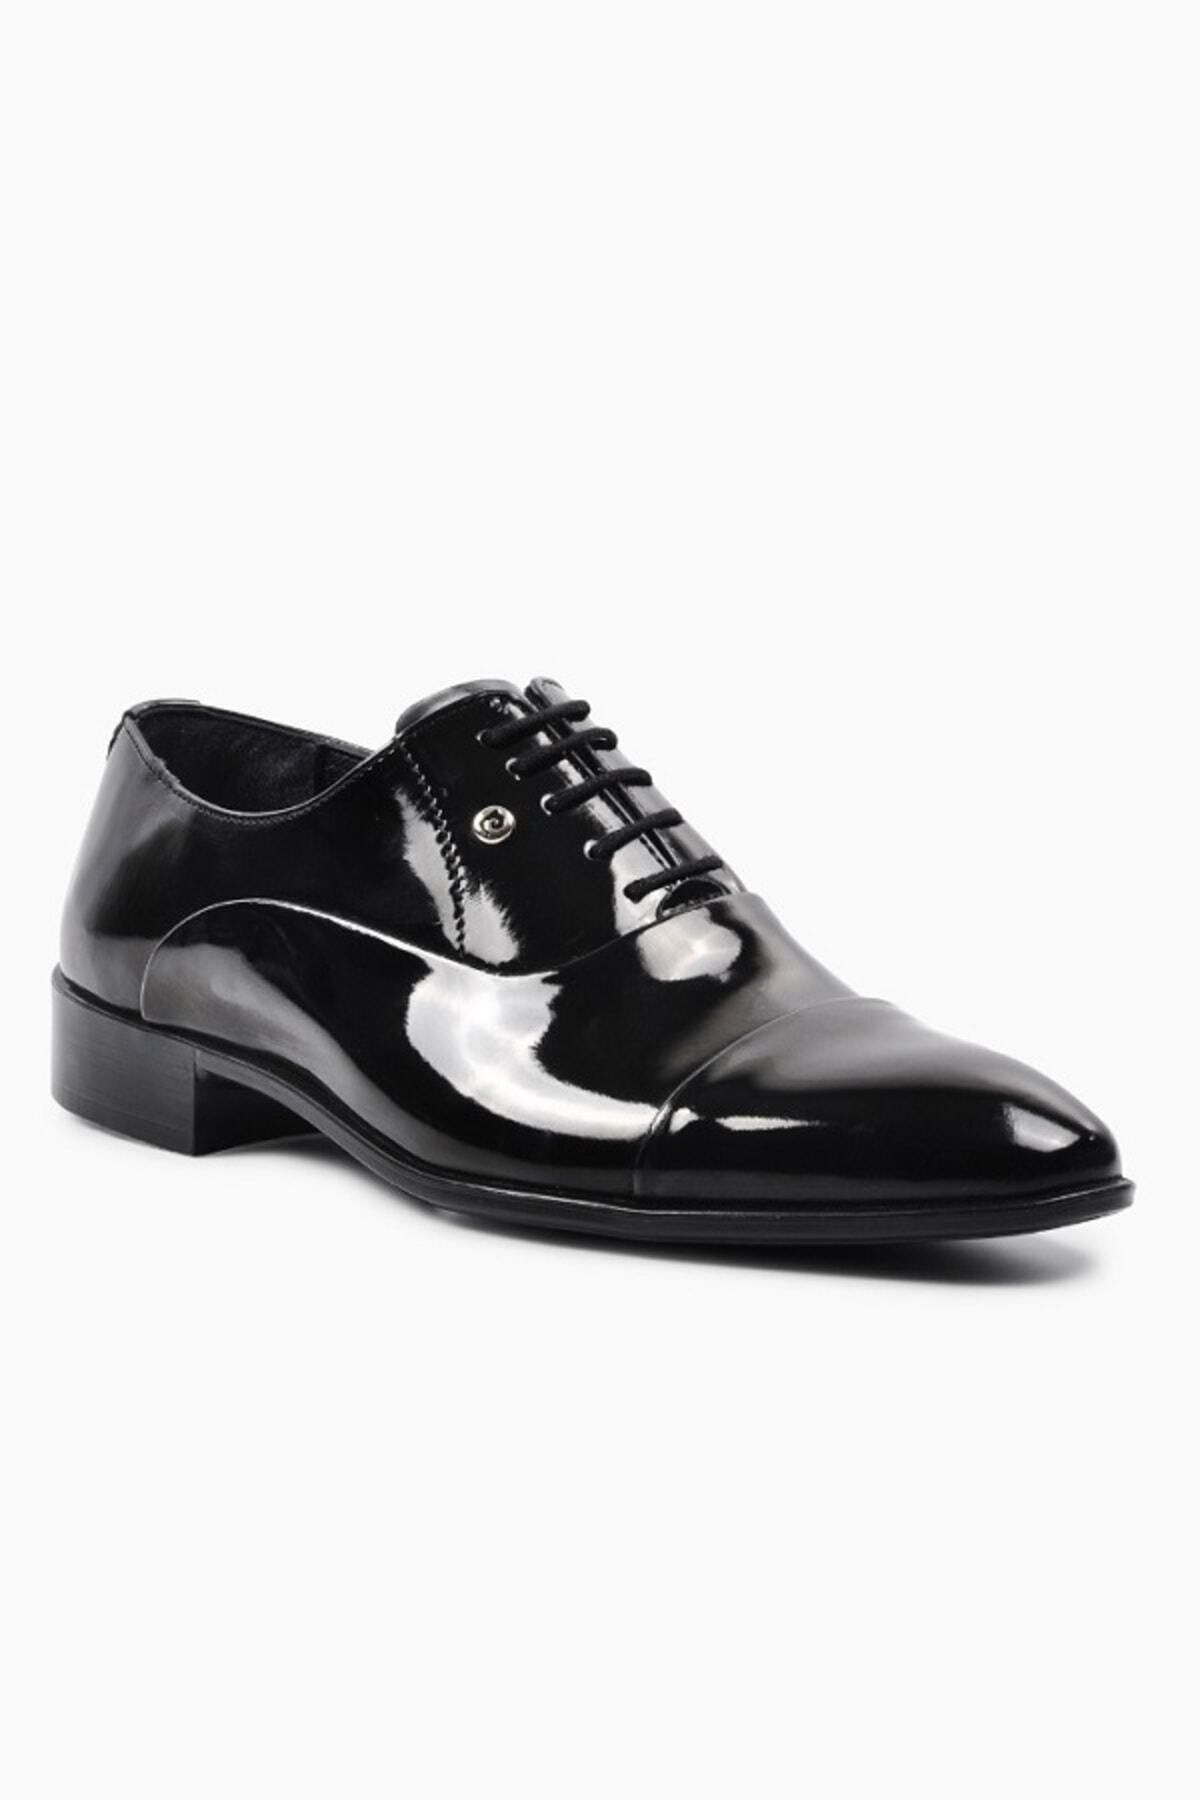 Pierre Cardin Klasik Erkek Siyah Rugan Ayakkabı